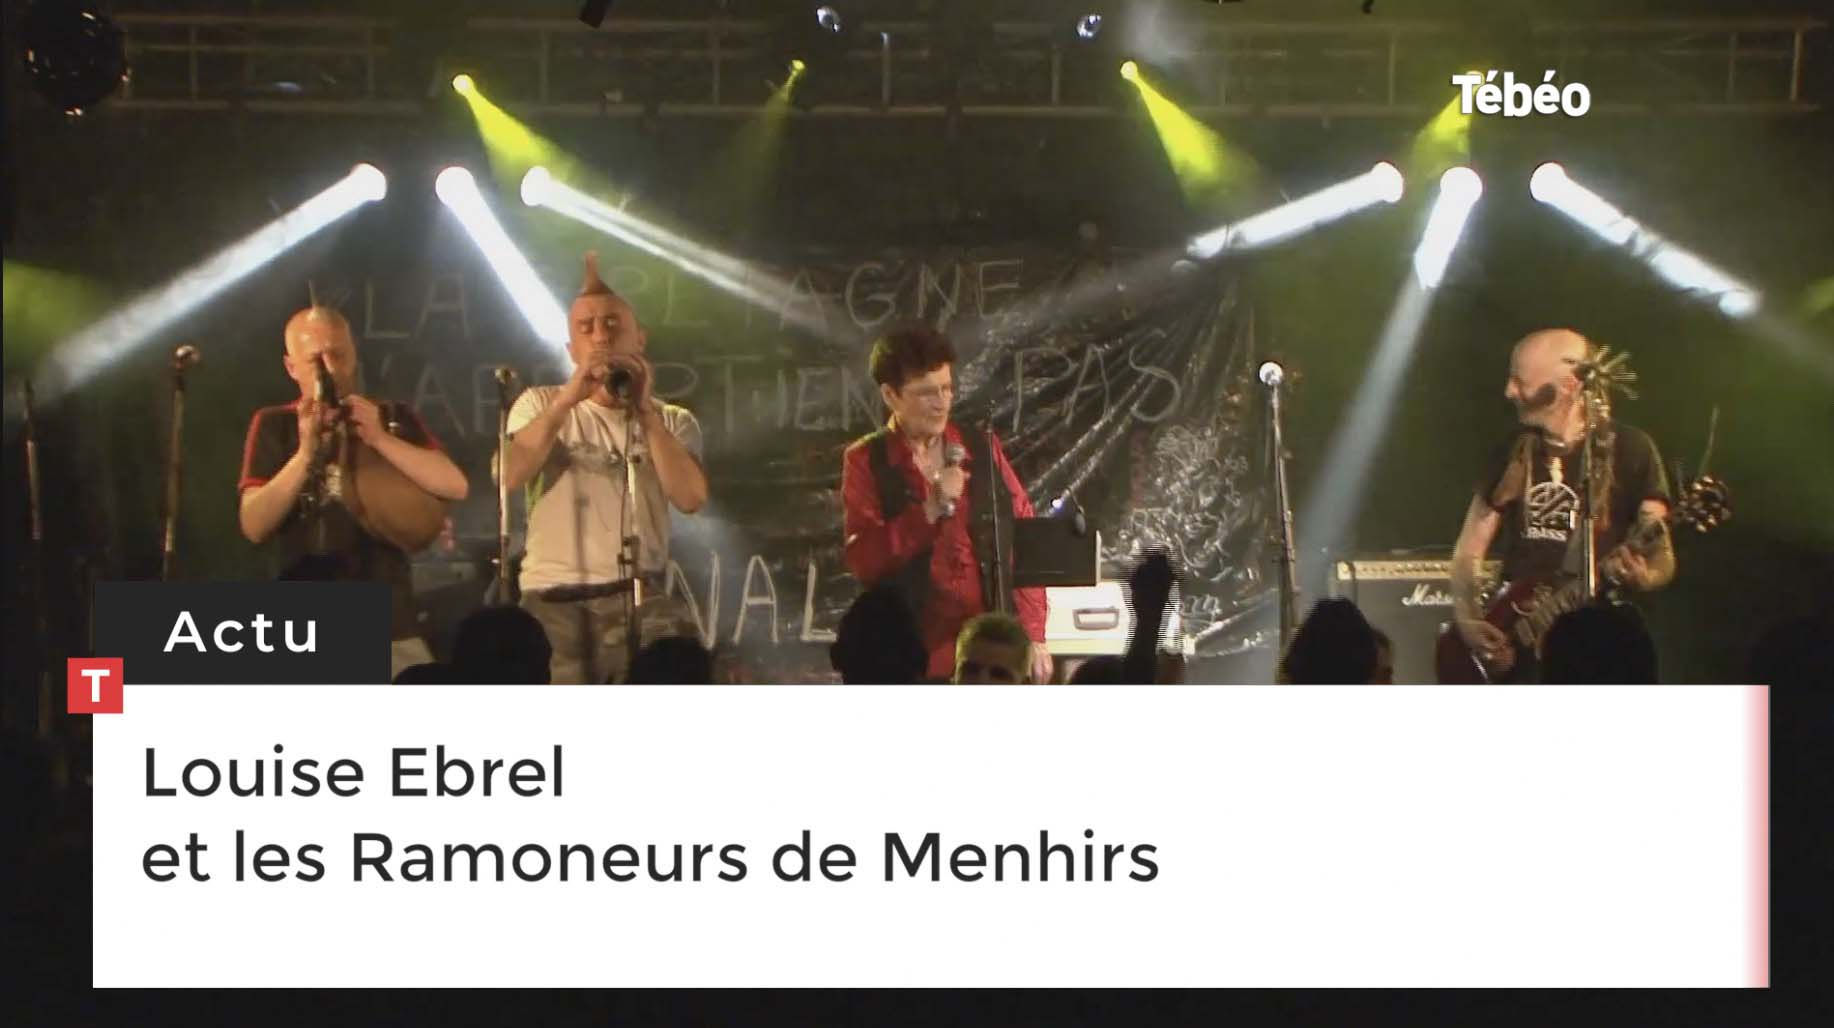 Louise Ebrel et les Ramoneurs de Menhirs (Le Télégramme)